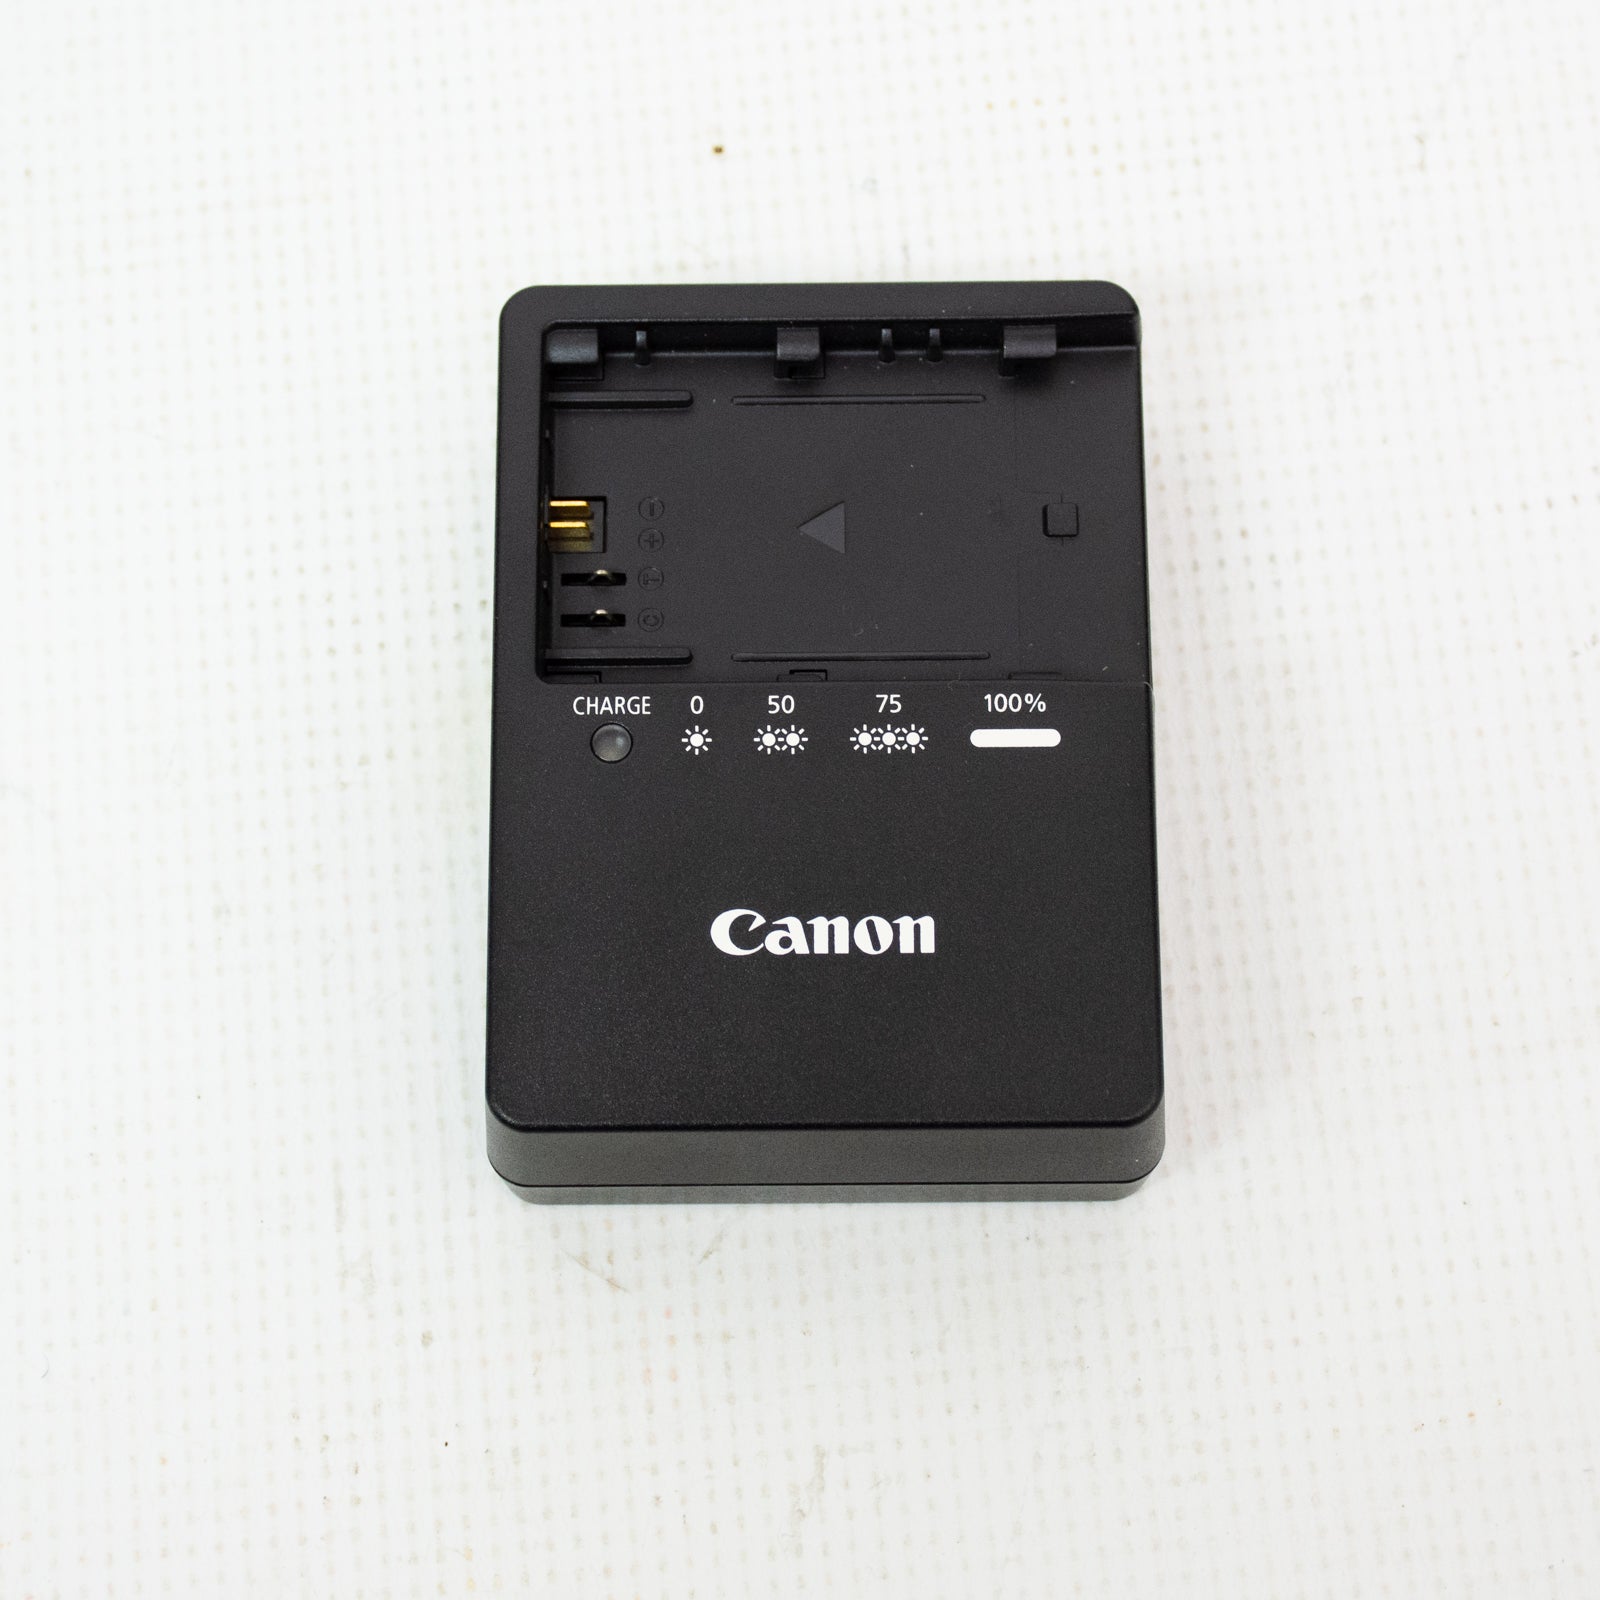 Canon 90D DSLR Camera Bundle